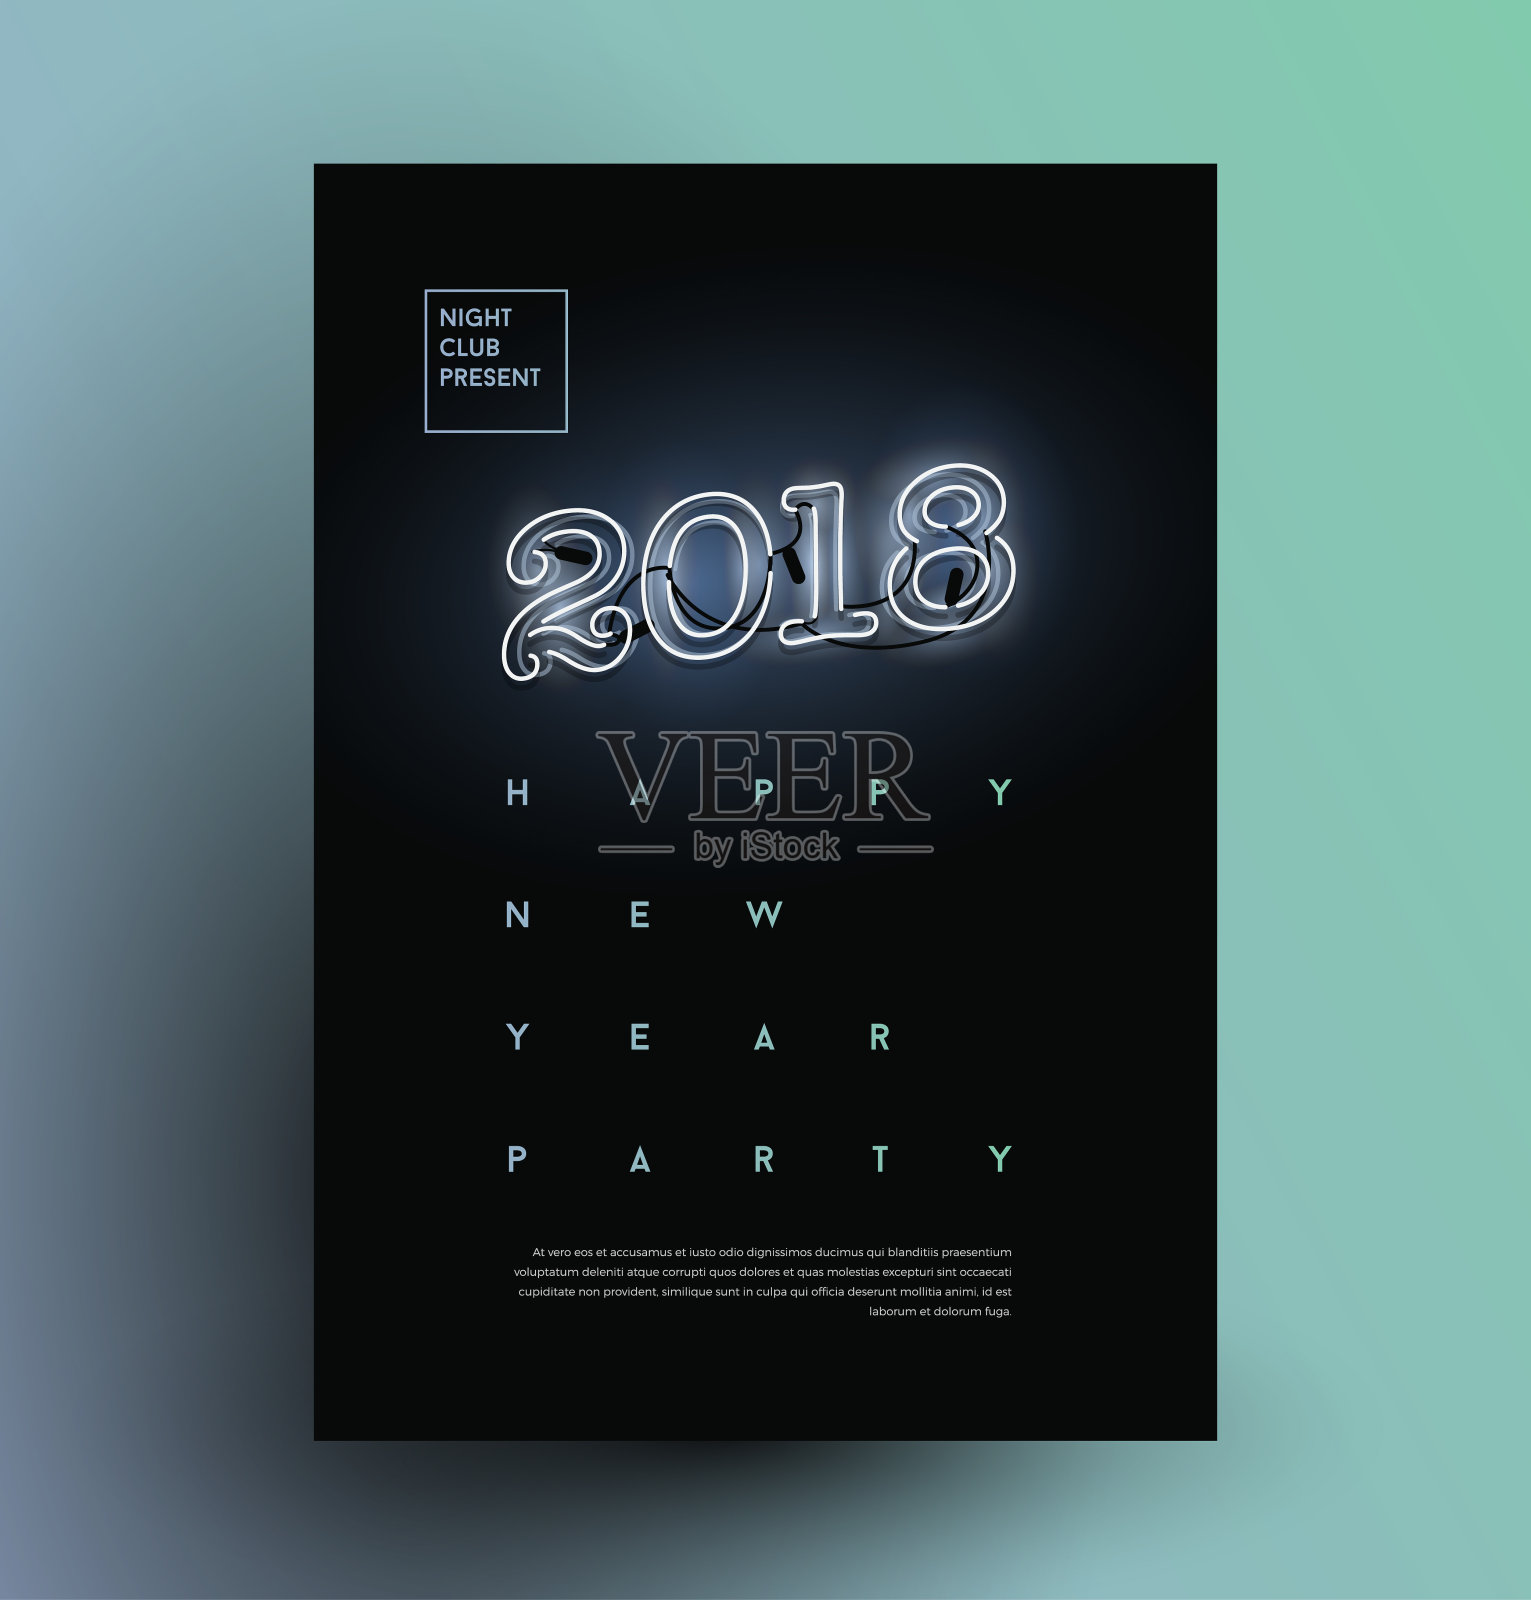 极简现代风格2018快乐新年派对海报设计模板素材